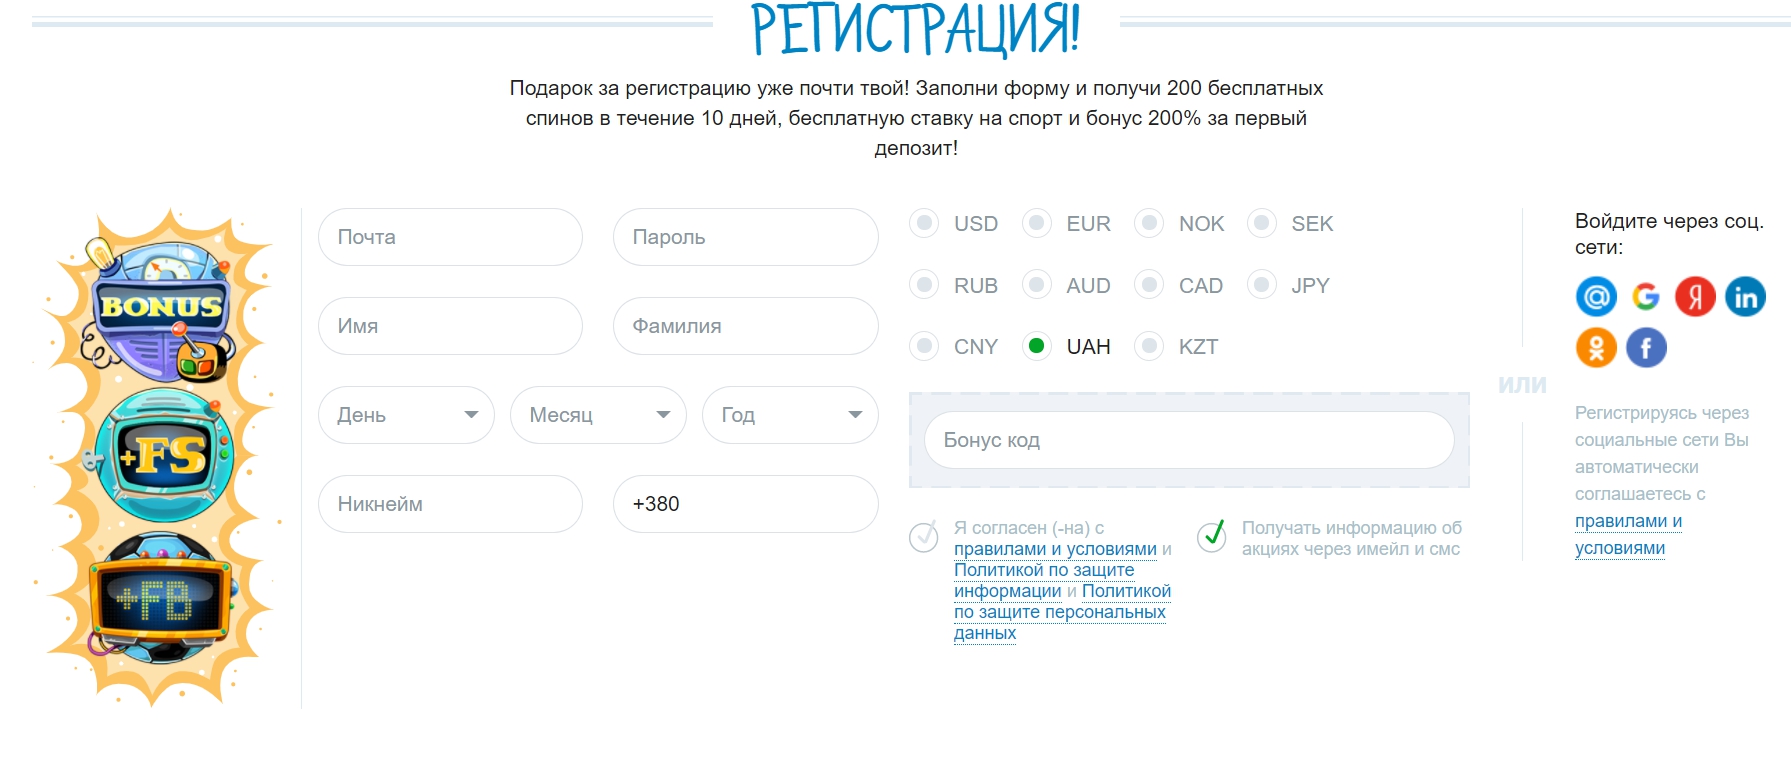 casino x как выиграть x2021 ru регистрация